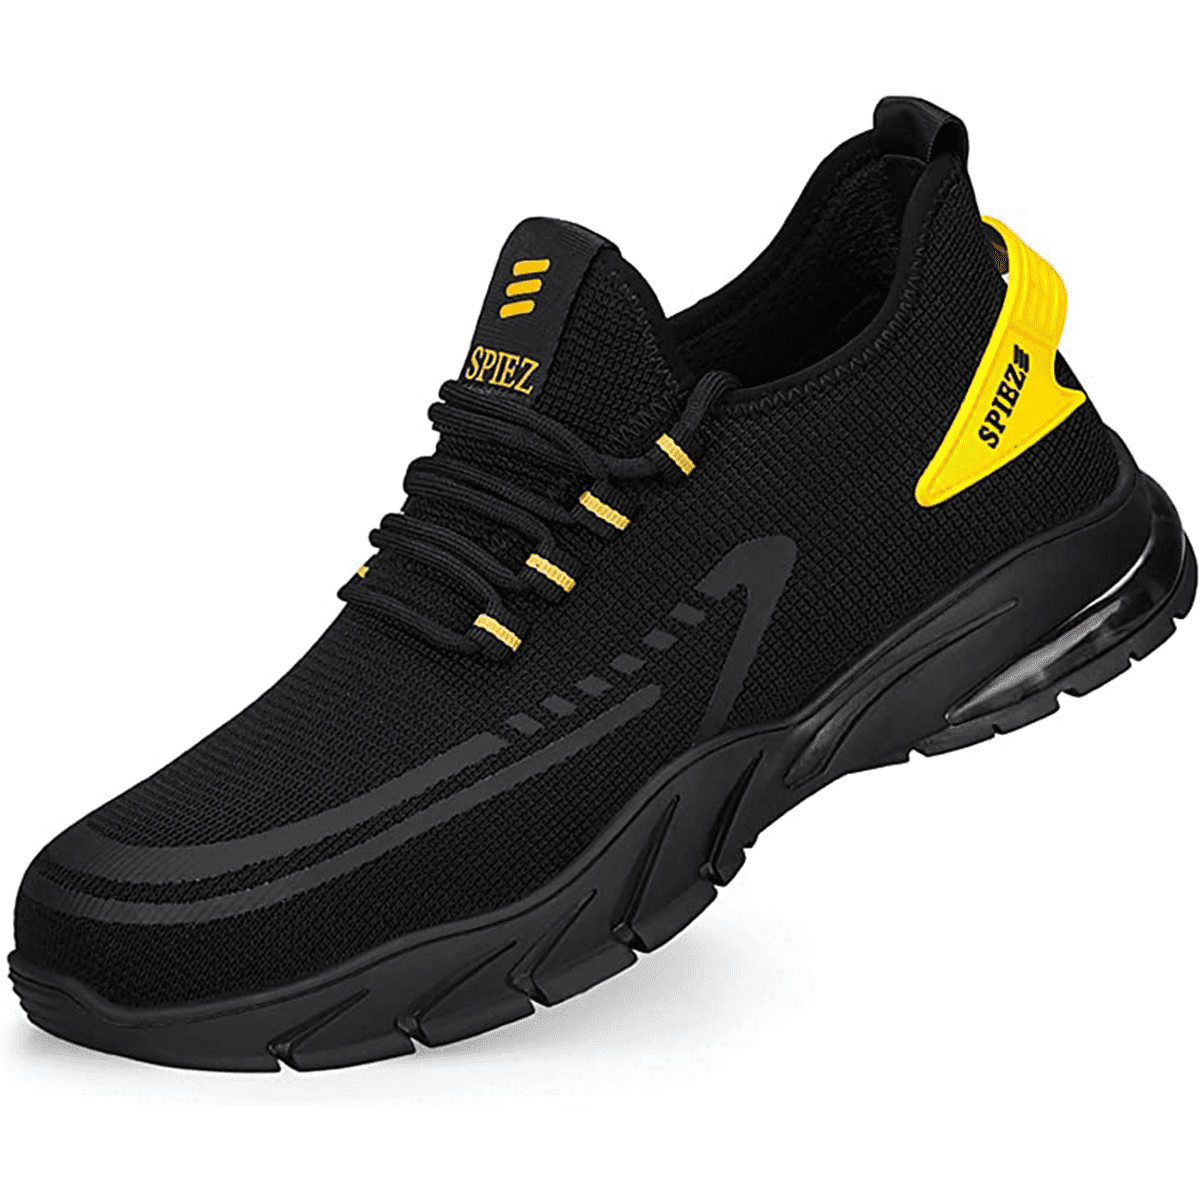 SPIEZ Men's Steel Toe Work Shoes, Safety Lightweight Waterproof Outdoor ...